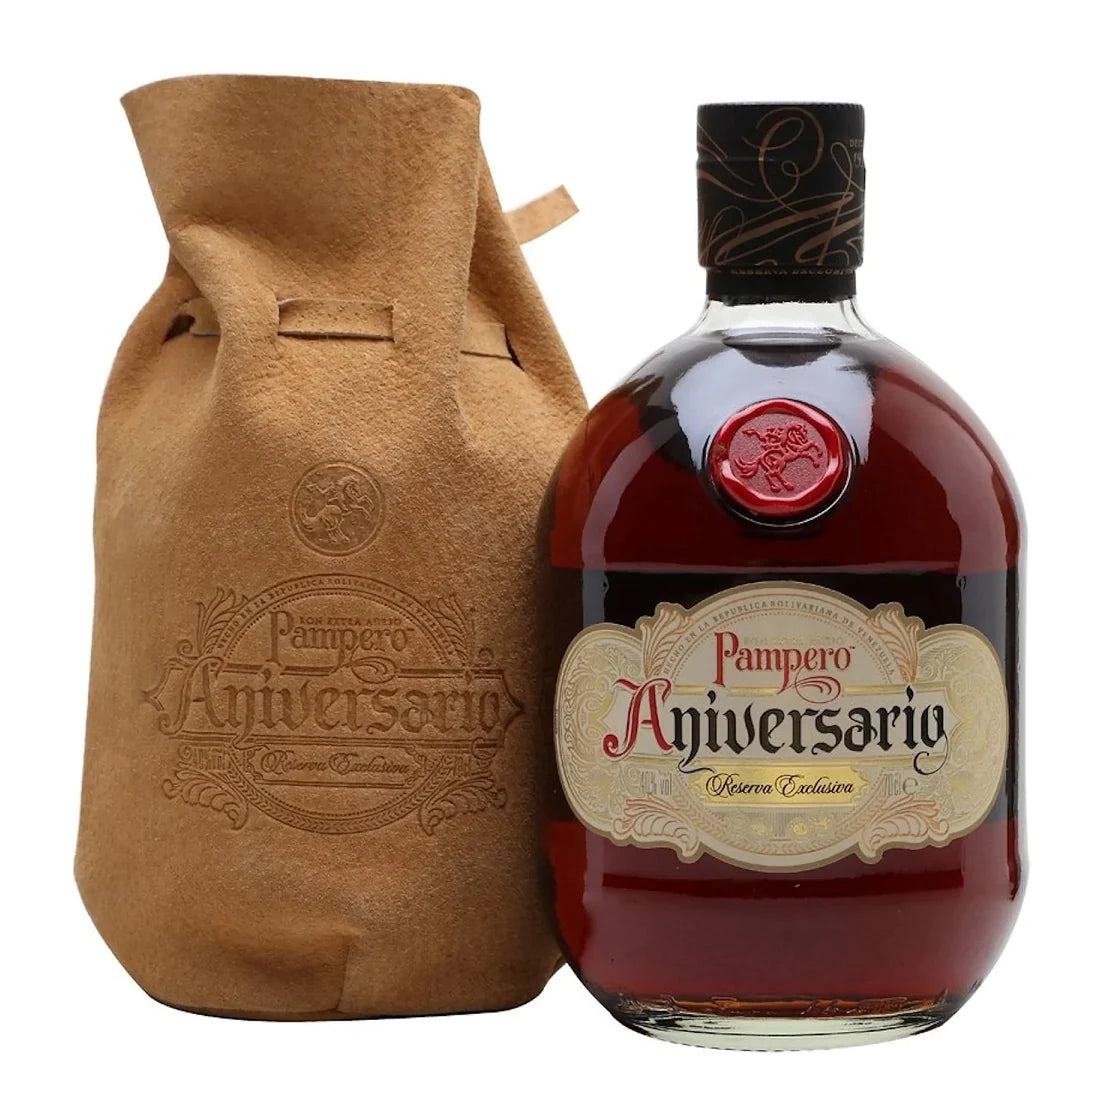 Pampero Aniversario Reserva Exclusiva Rum 750ml – El Cerrito Liquor